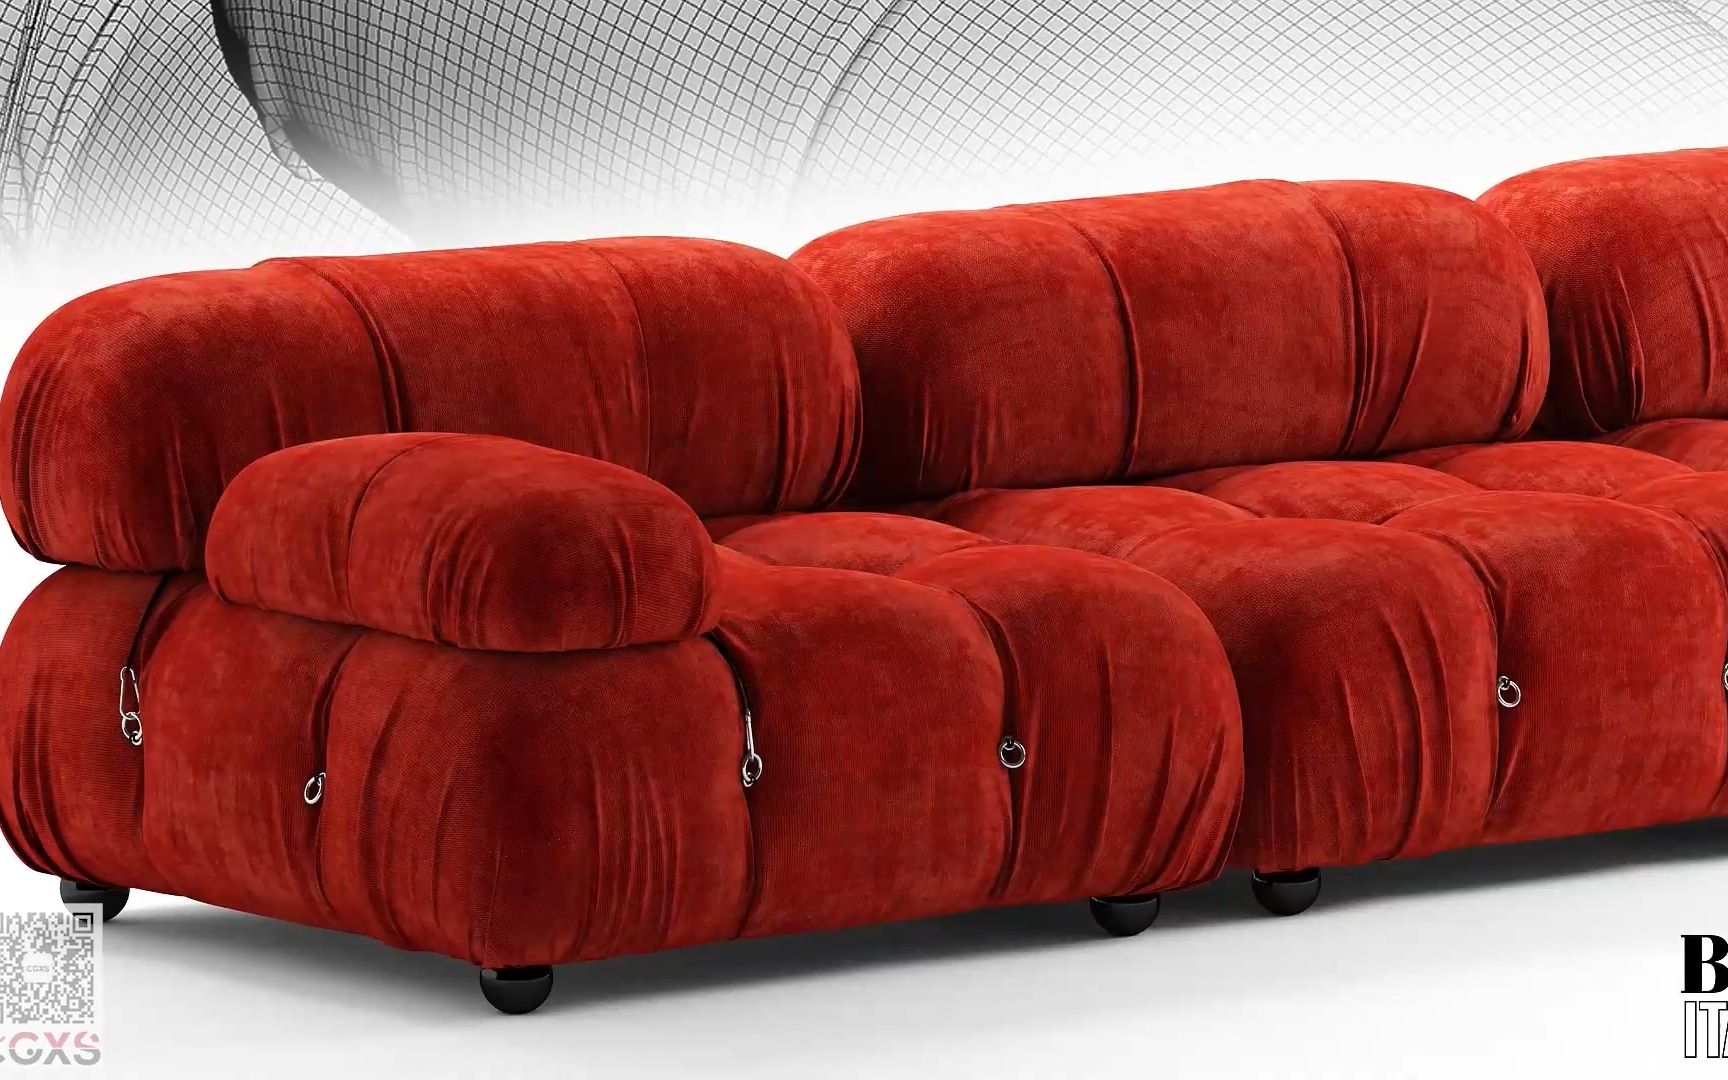 Giorgetti 沙发 Dhow 系列 半圆形家具会议沙发多人沙发面料规格颜色可定制